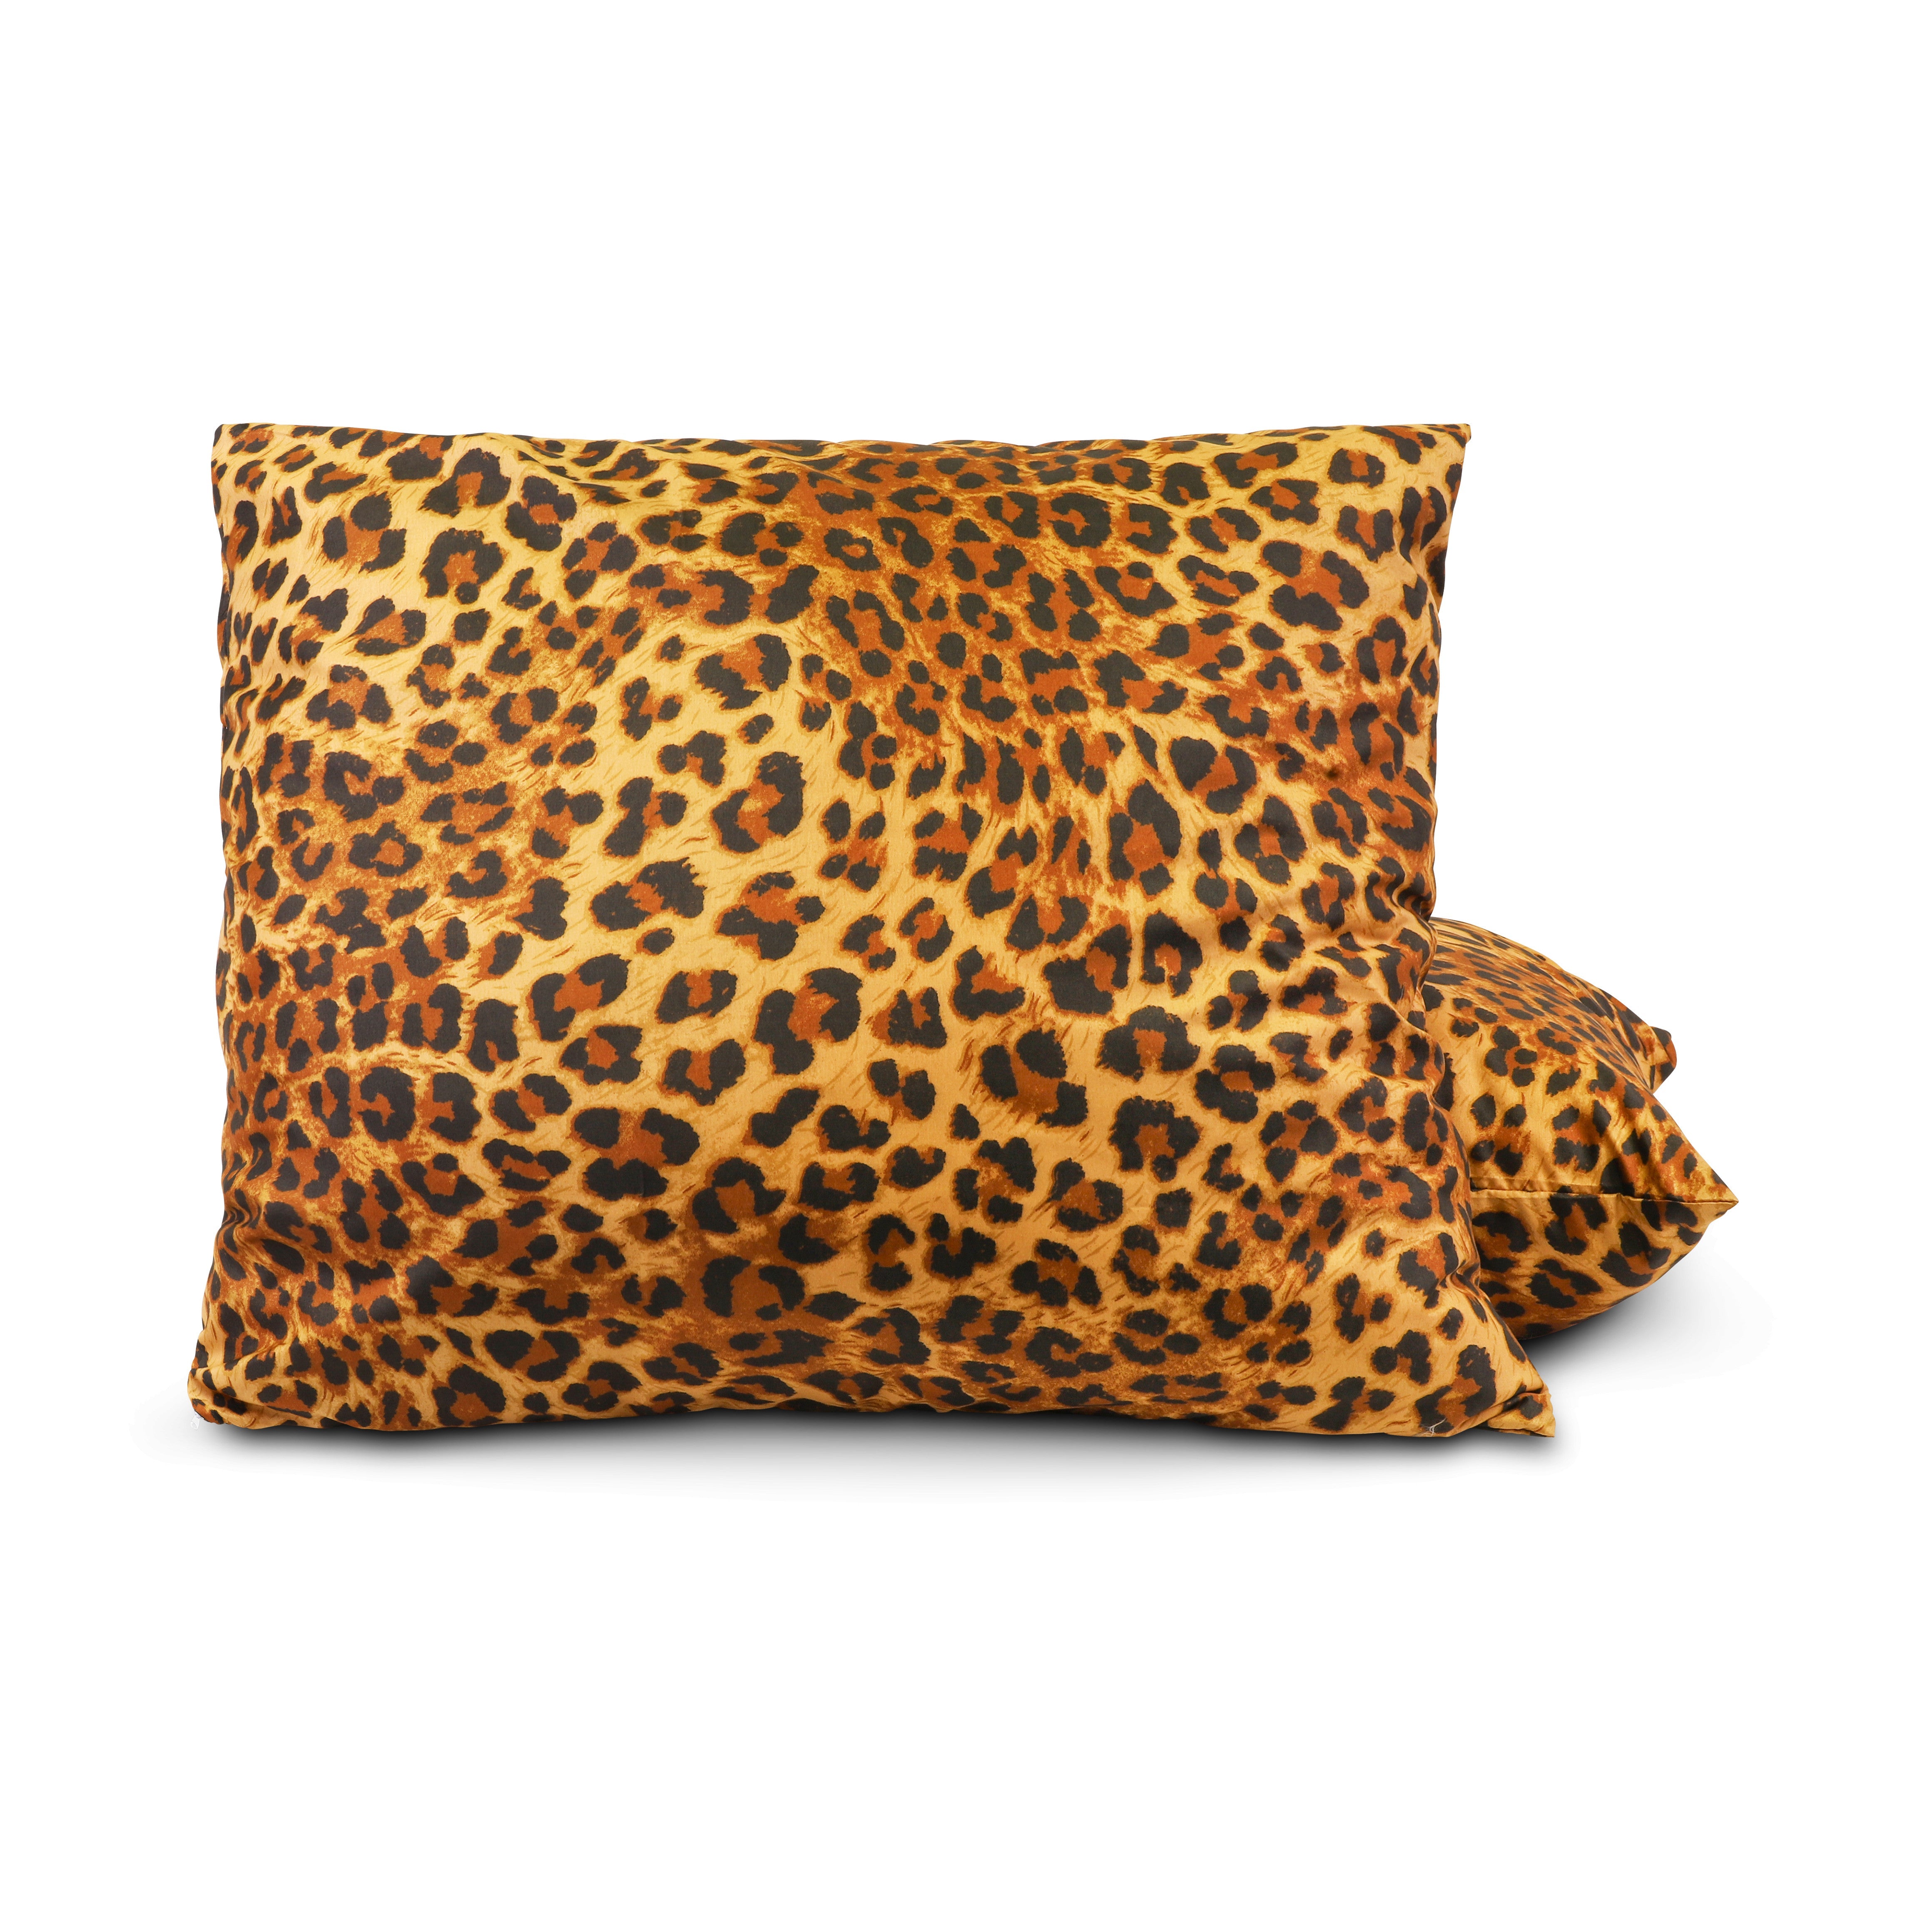 HappyDuvet | Panther pillowcase set 2 pieces - 60x70cm - 100% Microfibre